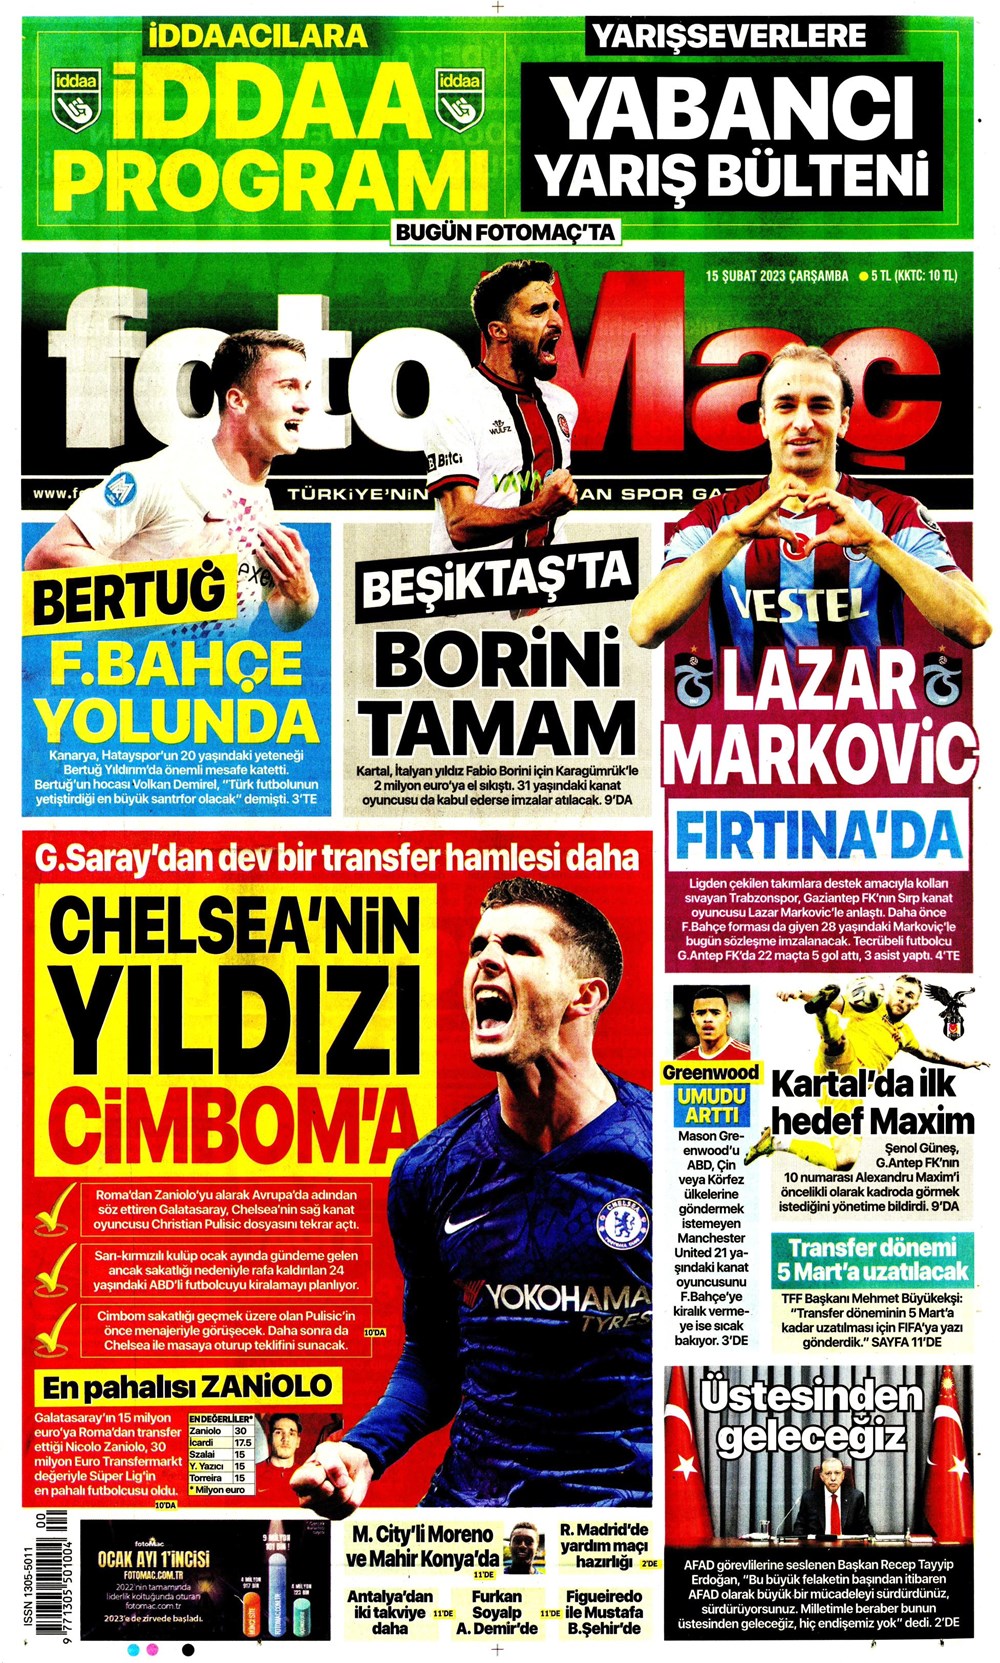 "Chelsea'nin yıldızı Cimbom'a" Sporun Manşetleri  - 1. Foto